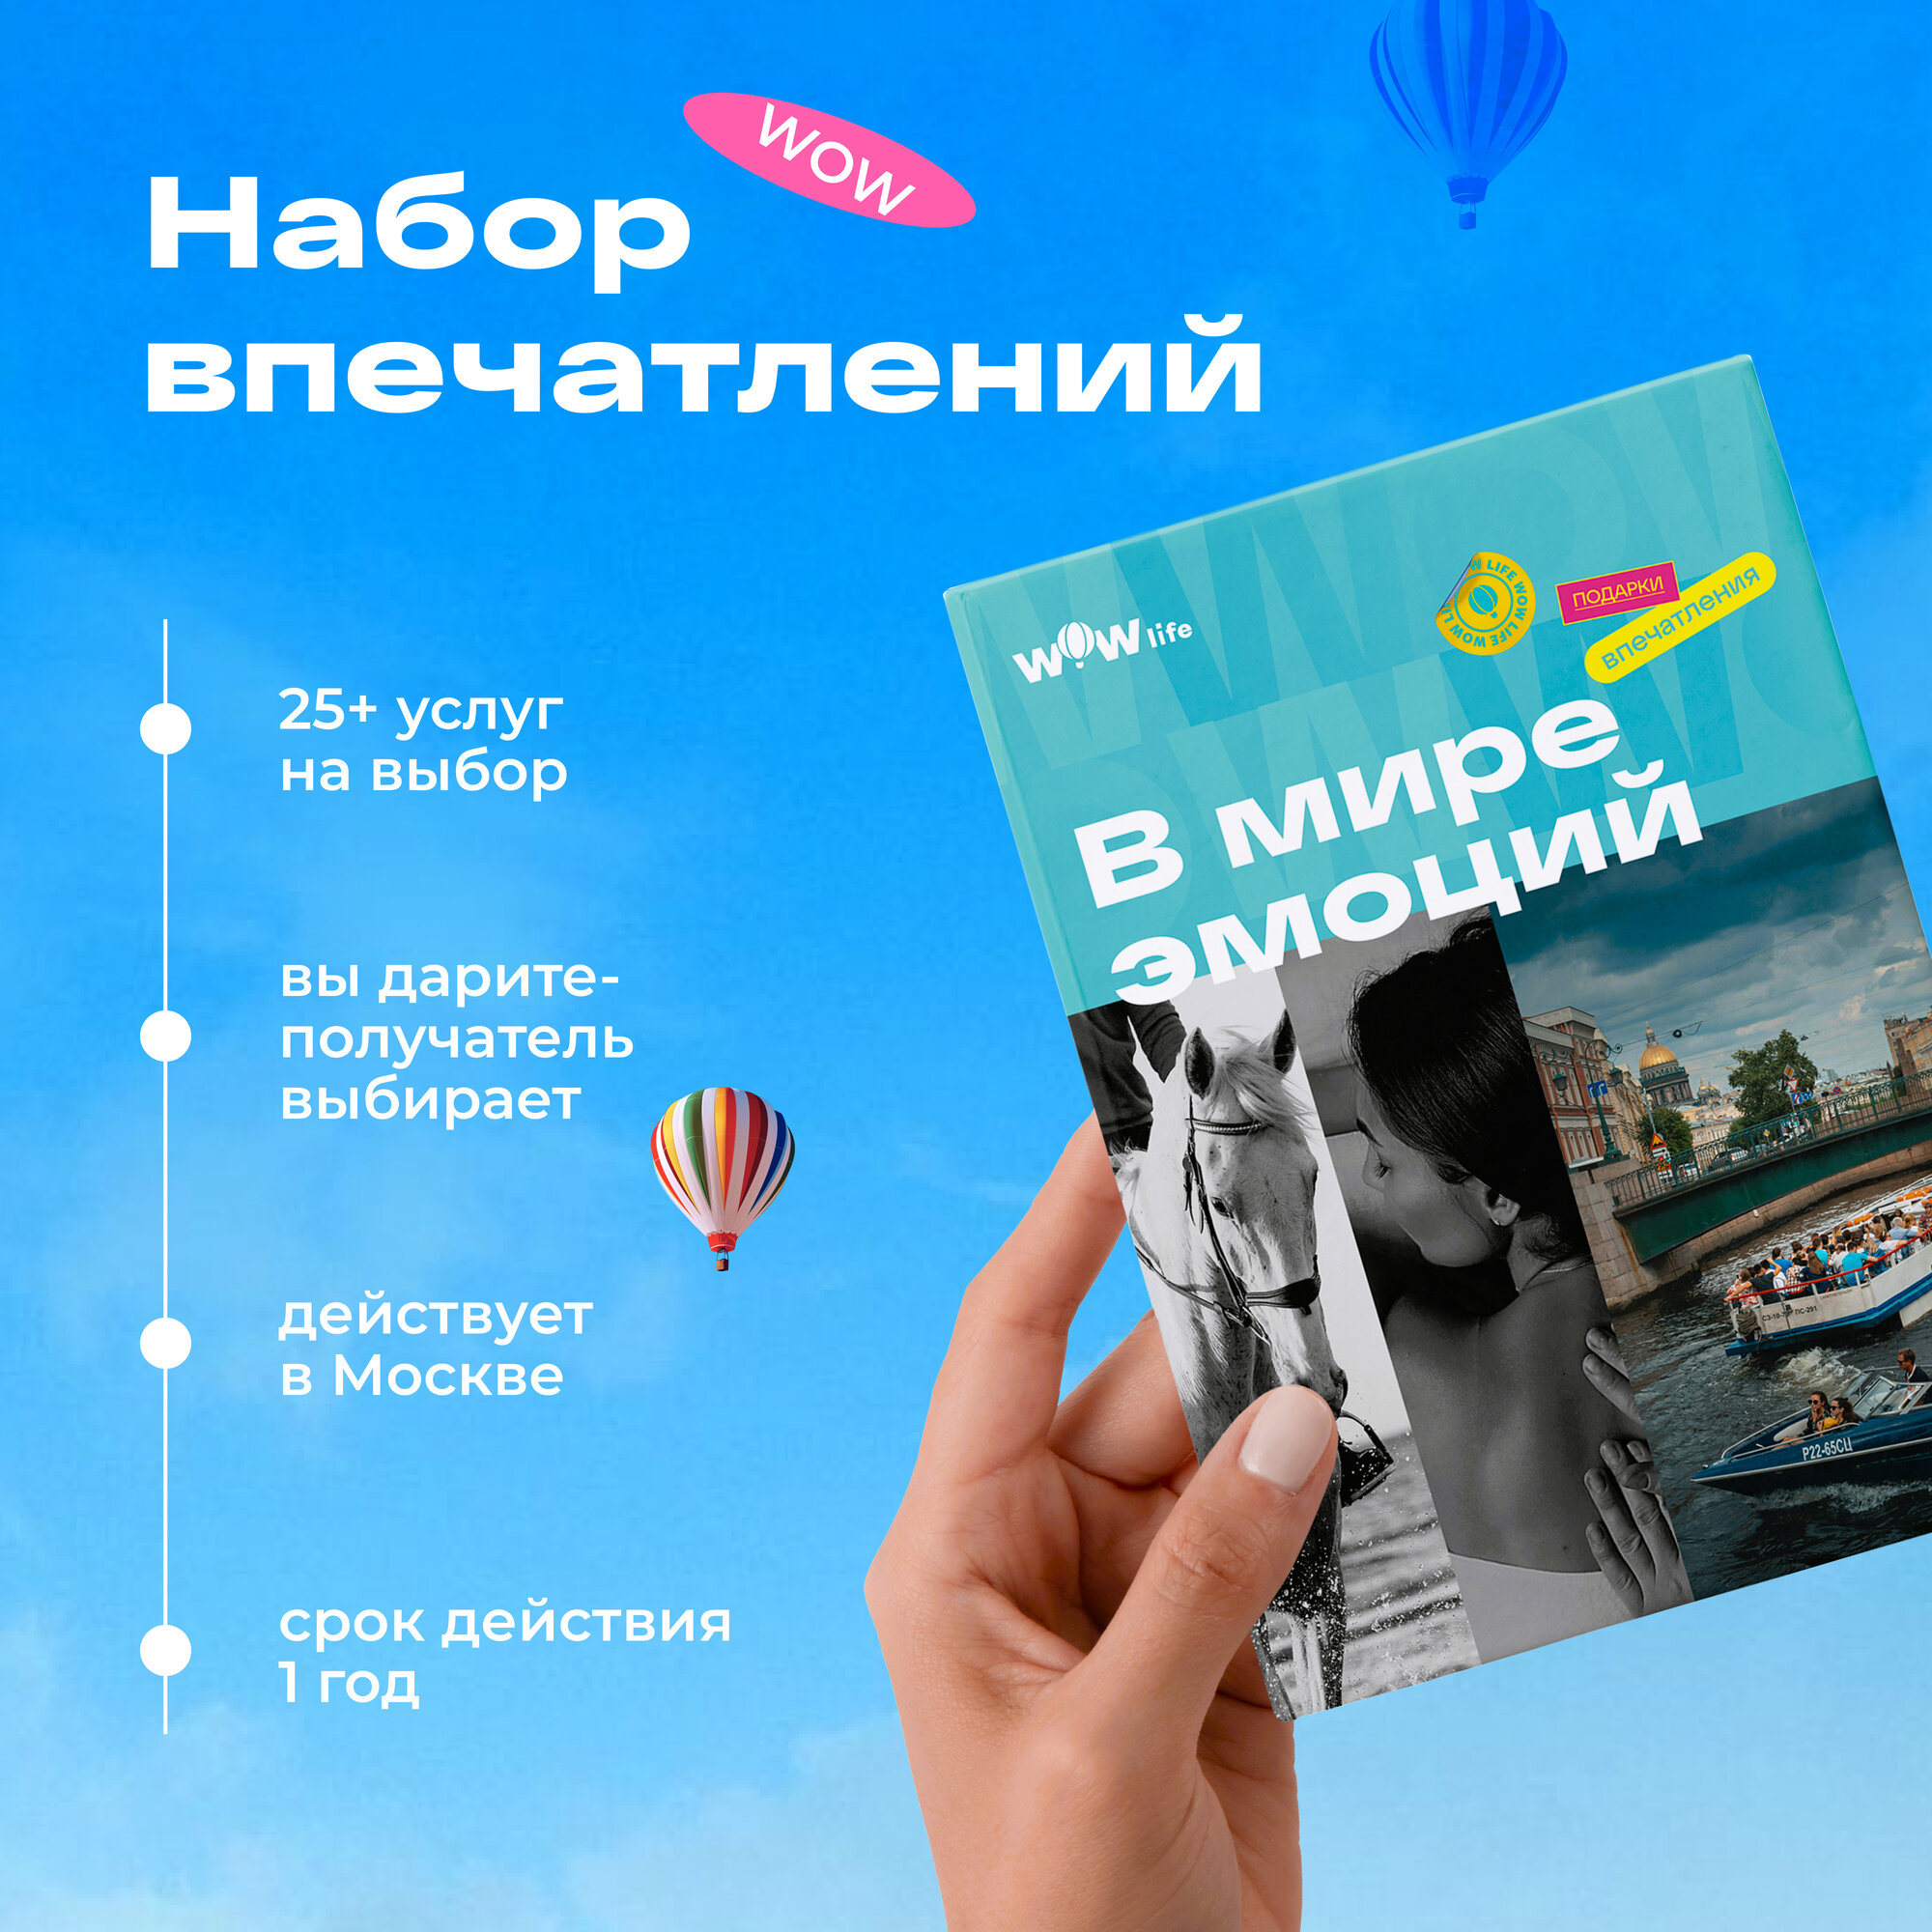 Подарочный сертификат WOWlife "В мире эмоций"- набор из впечатлений на выбор, Москва